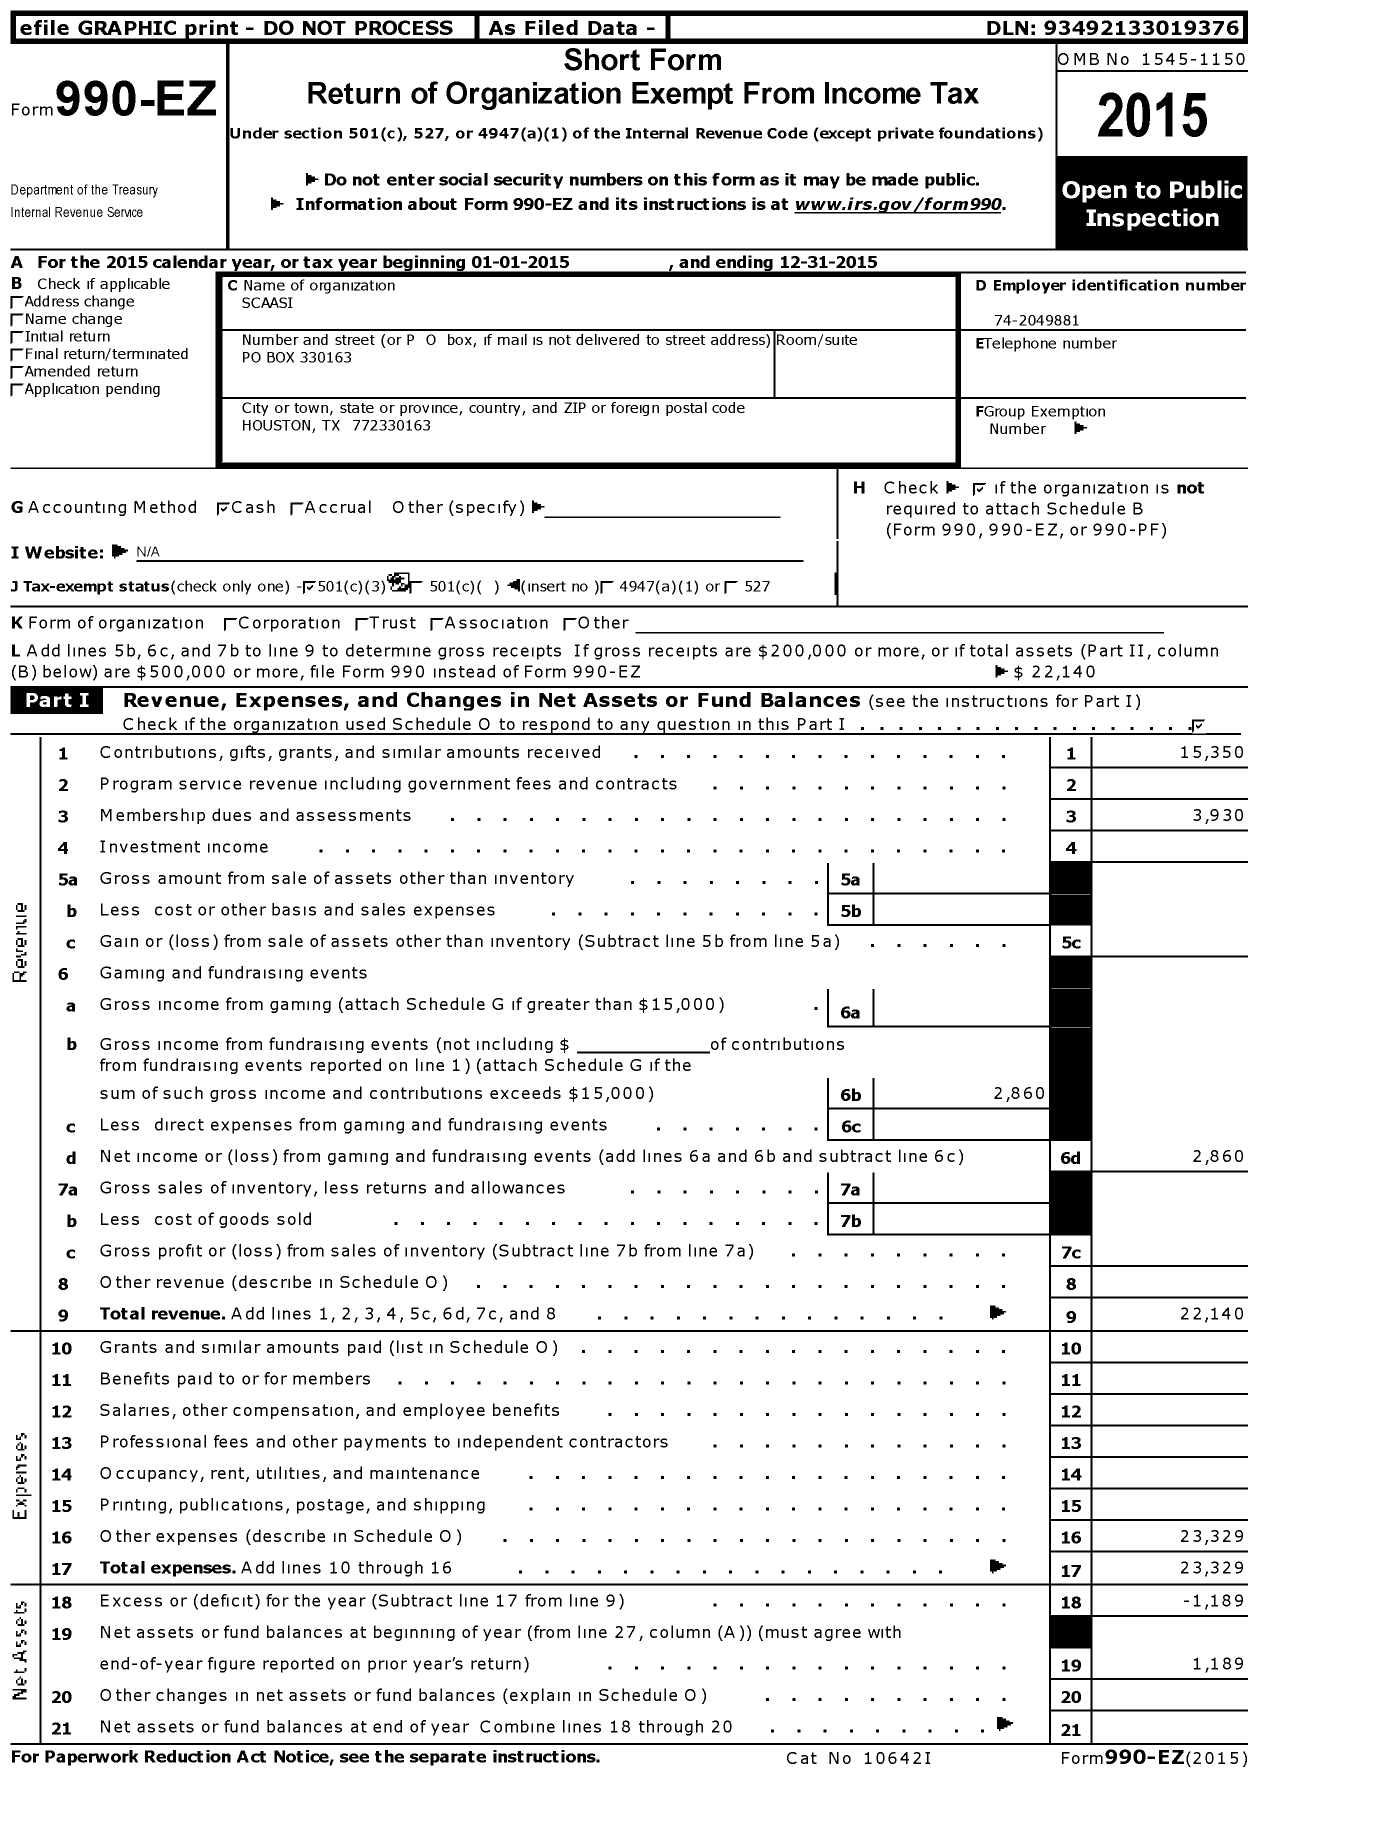 Image of first page of 2015 Form 990EZ for S C A A S I